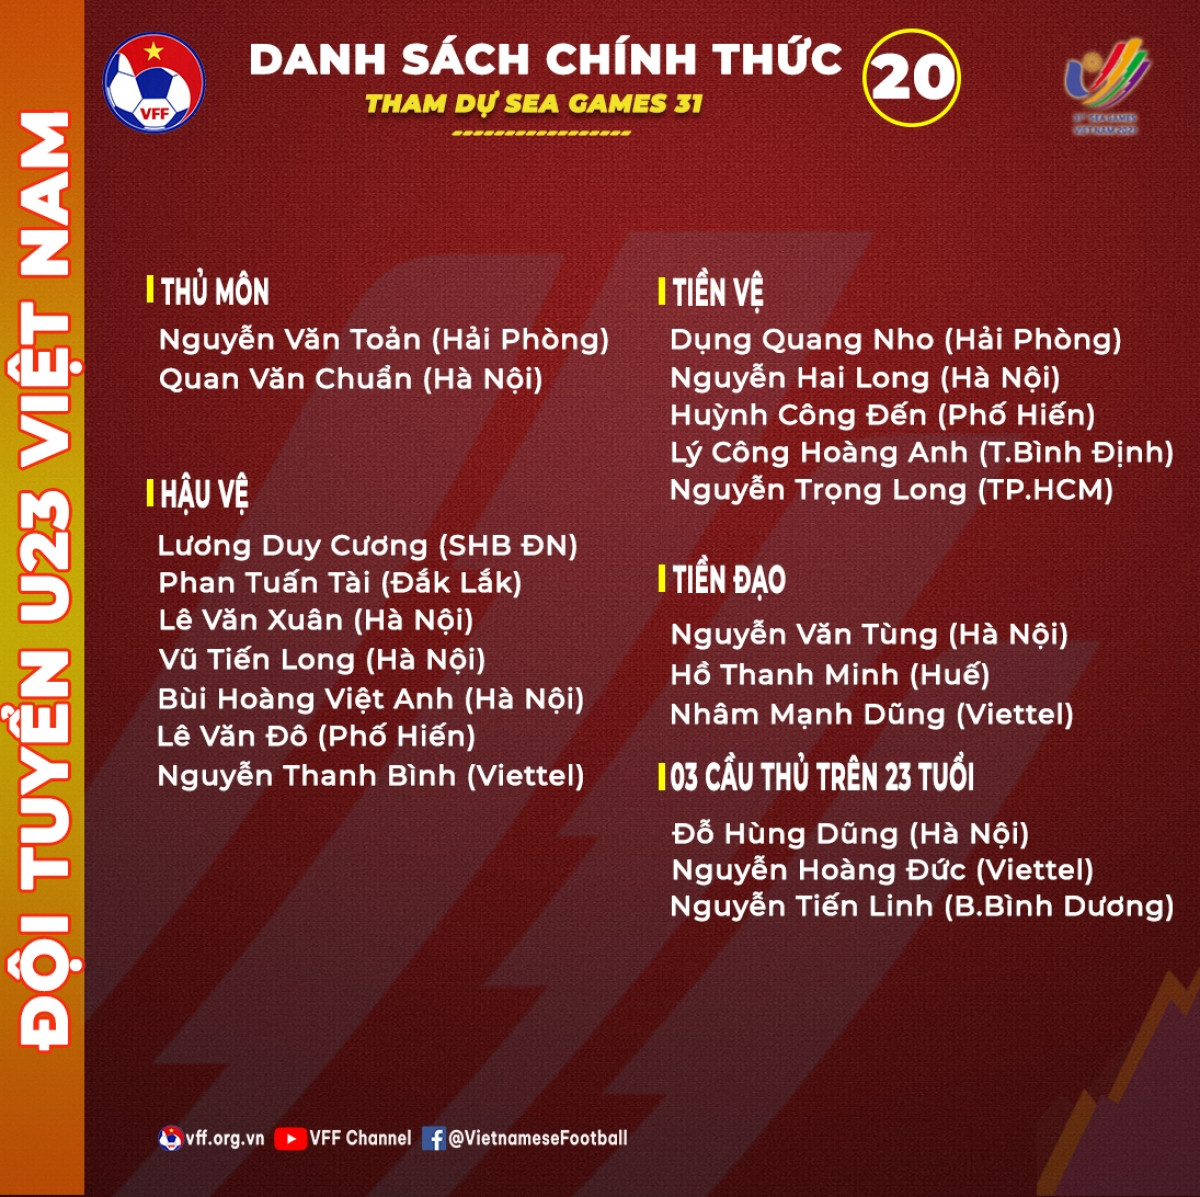 Cùng xem lại khoảnh khắc lịch sử của đội tuyển U23 Việt Nam tại giải bóng đá U23 châu Á với những bức ảnh đáng nhớ!